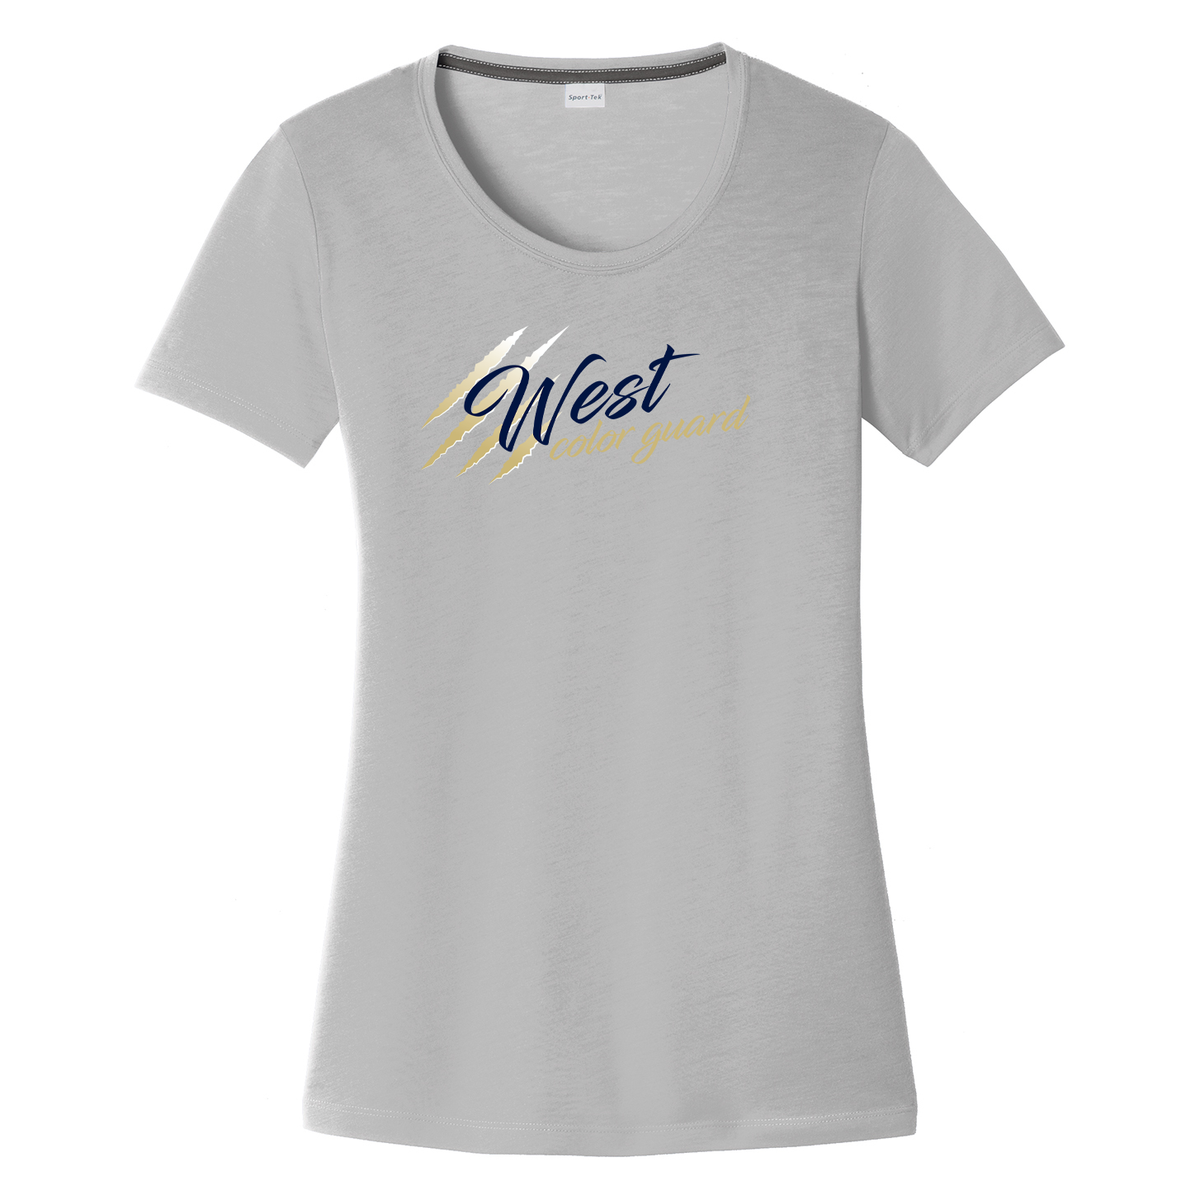 West Forsyth Color Guard Women's CottonTouch Performance T-Shirt